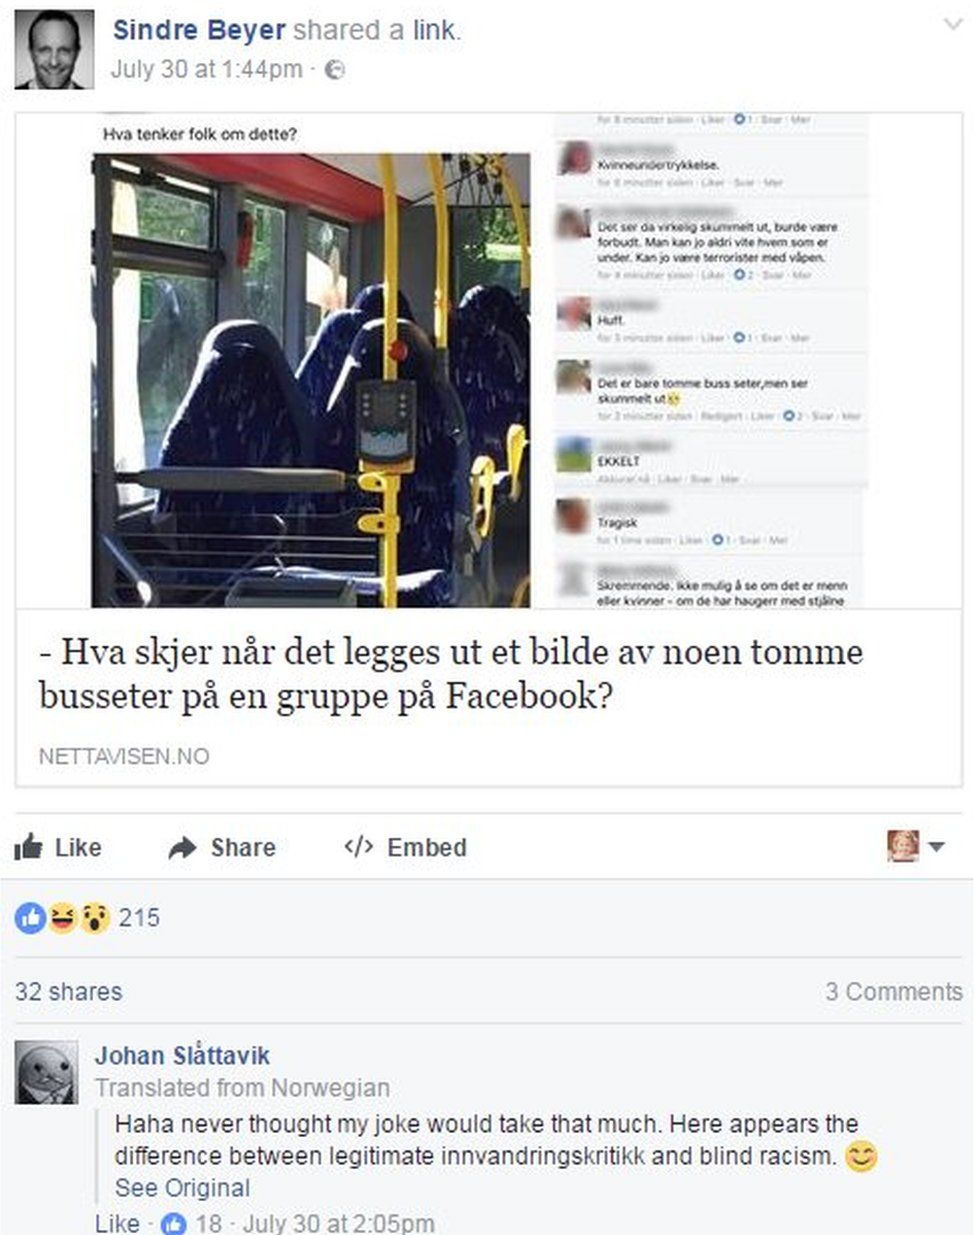 Пост в Facebook о пустых сиденьях в автобусе с реакцией Йохана Слаттавика под ним